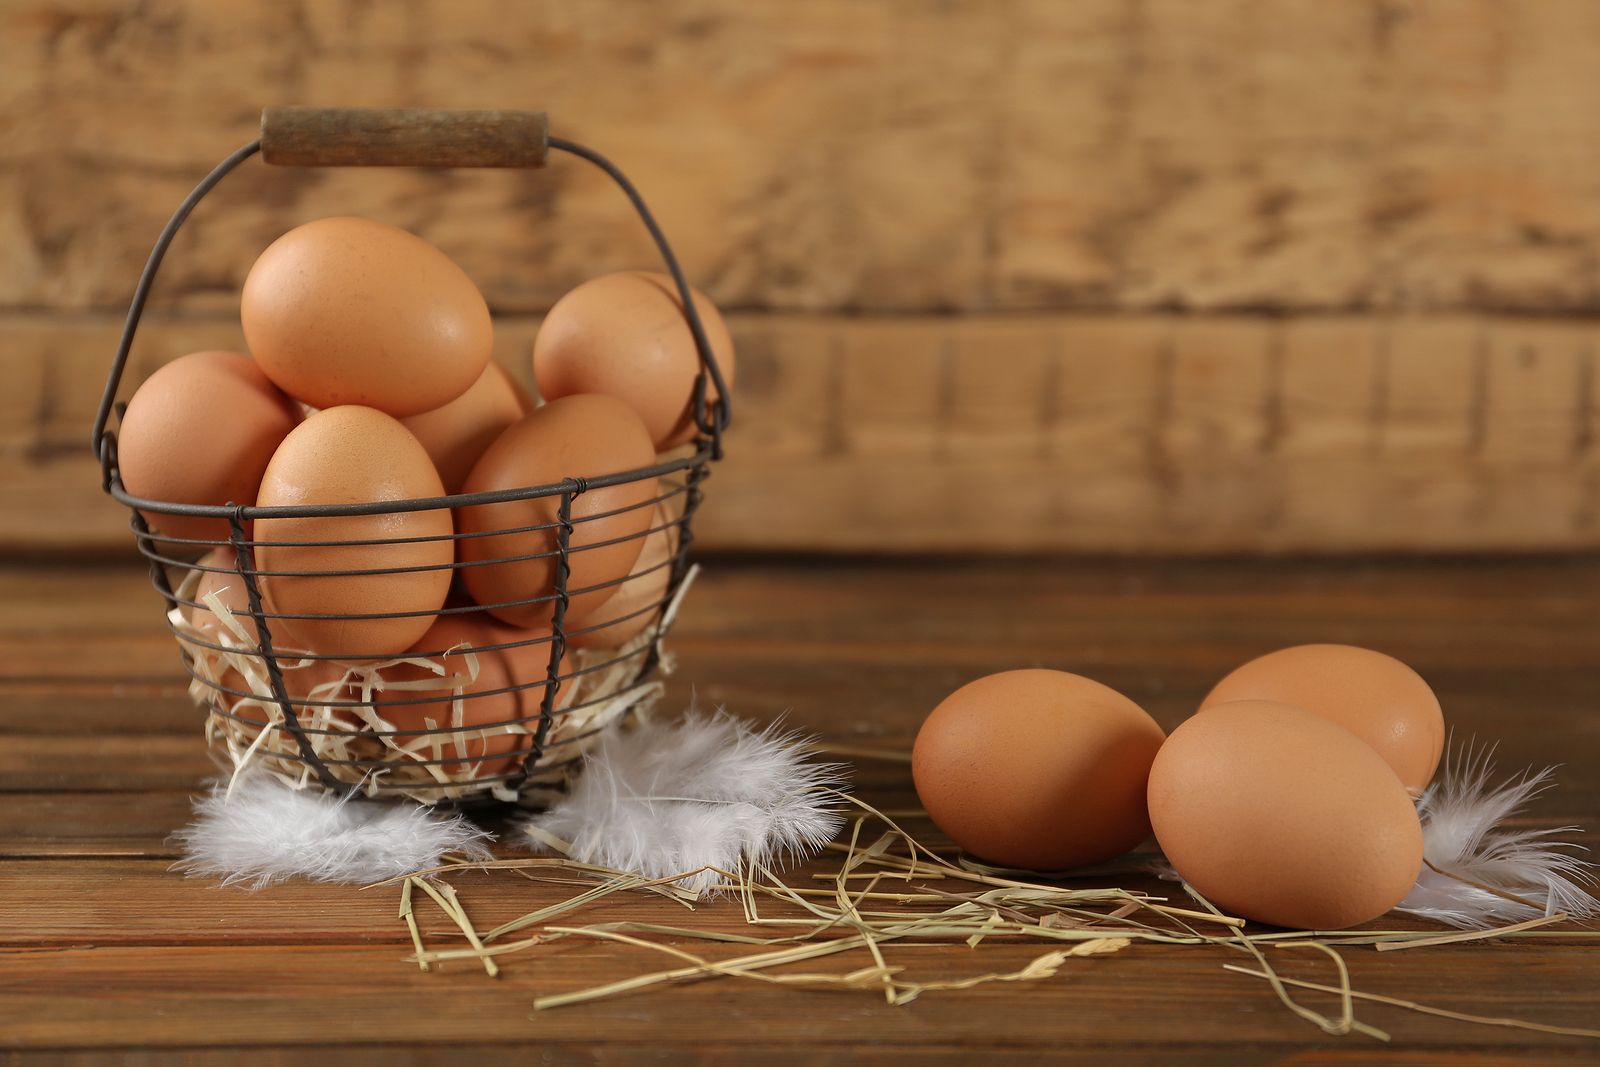 Beneficios del huevo y mitos sobre este producto que ya han sido desmontados. Los huevos, ¿mejor dentro o fuera de la nevera? foto: bigstock